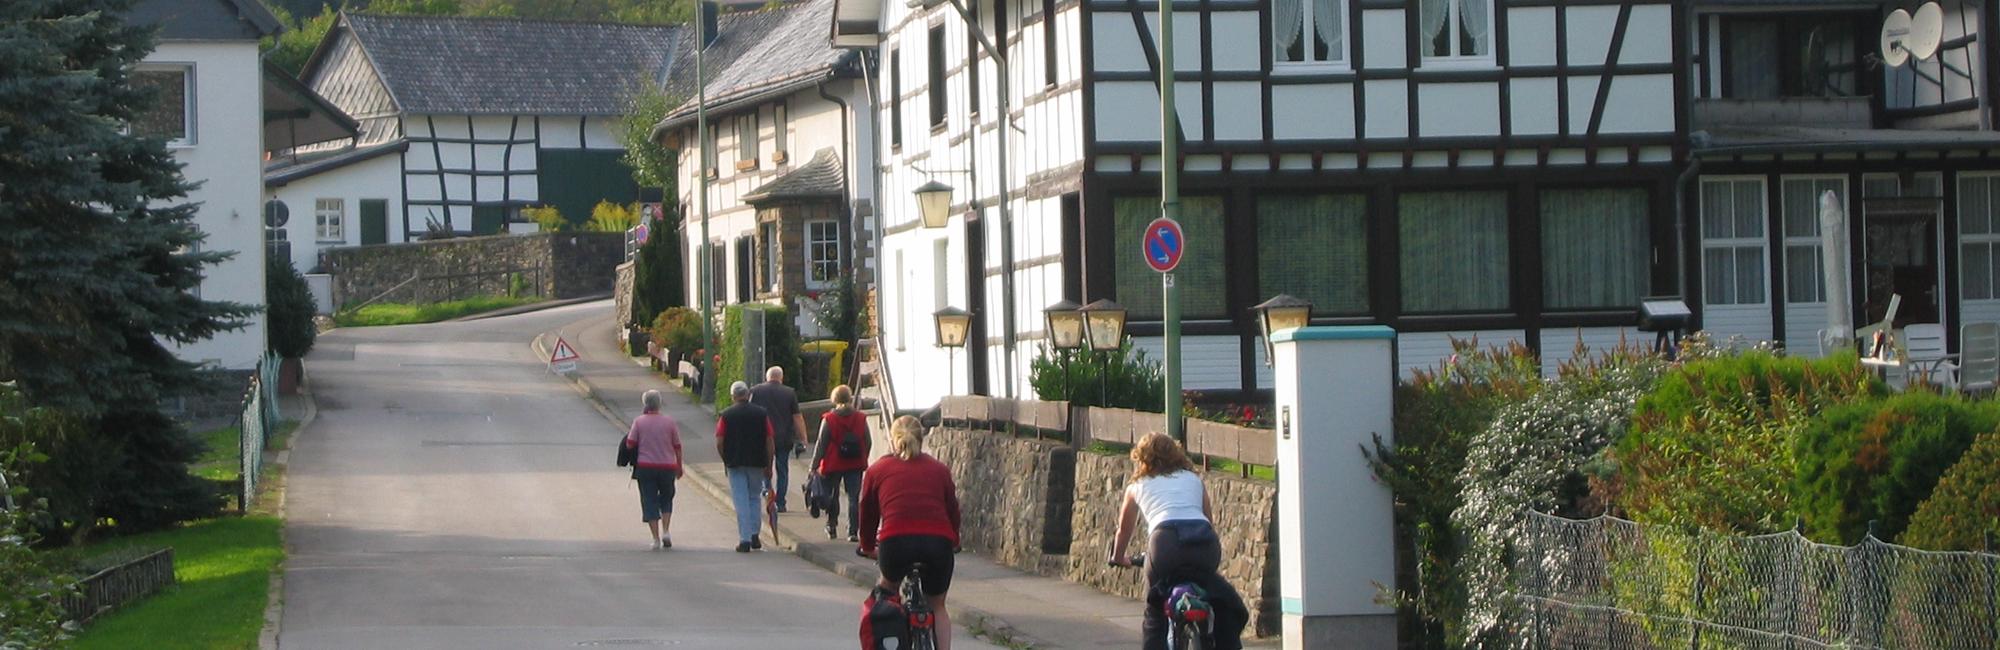 Drielanden tour - fietsvakantie tussen Maas en Rijn